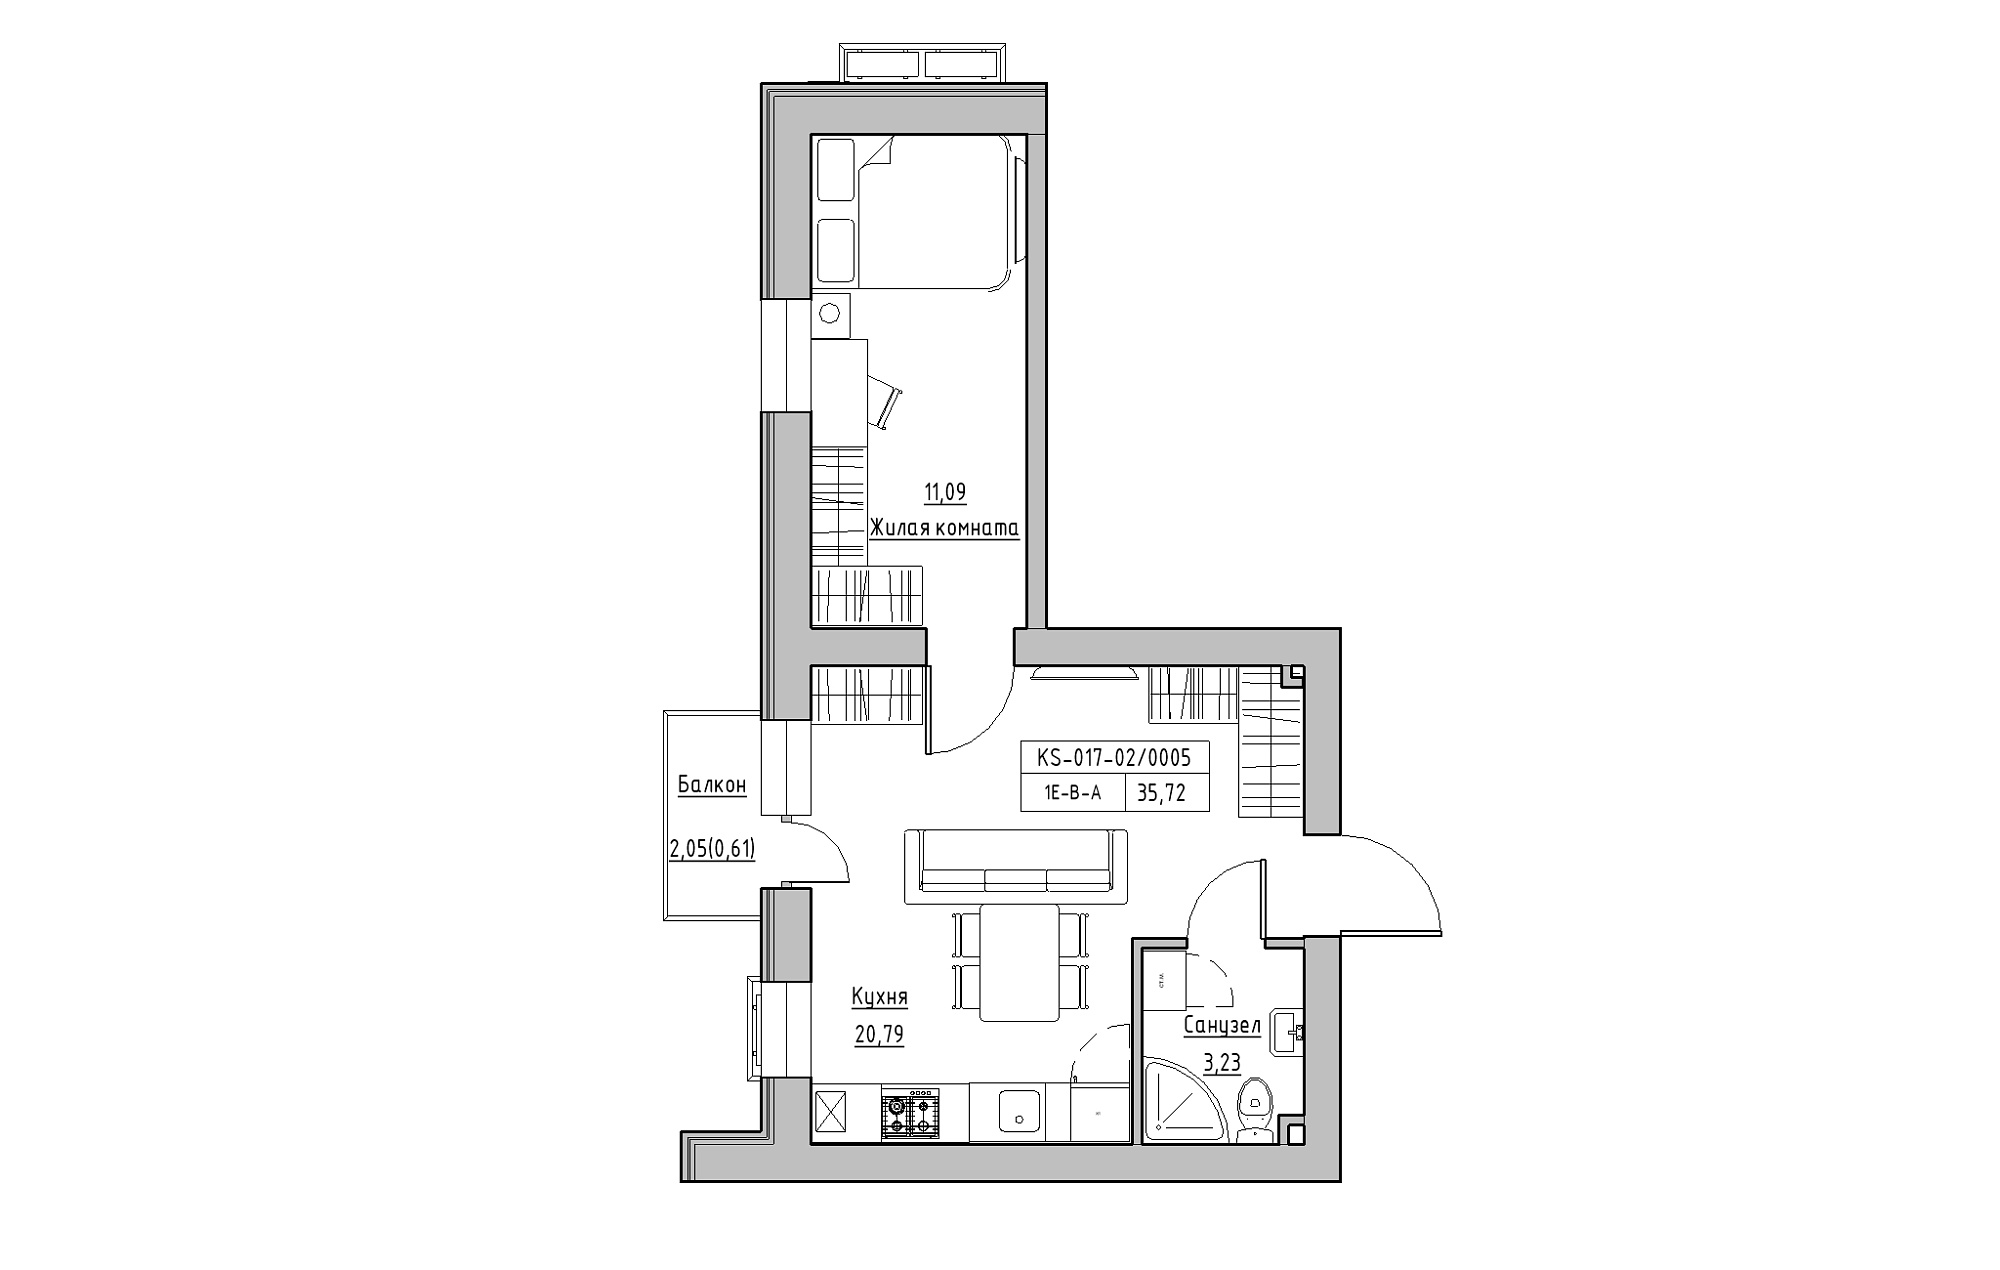 Планування 1-к квартира площею 35.72м2, KS-017-02/0005.